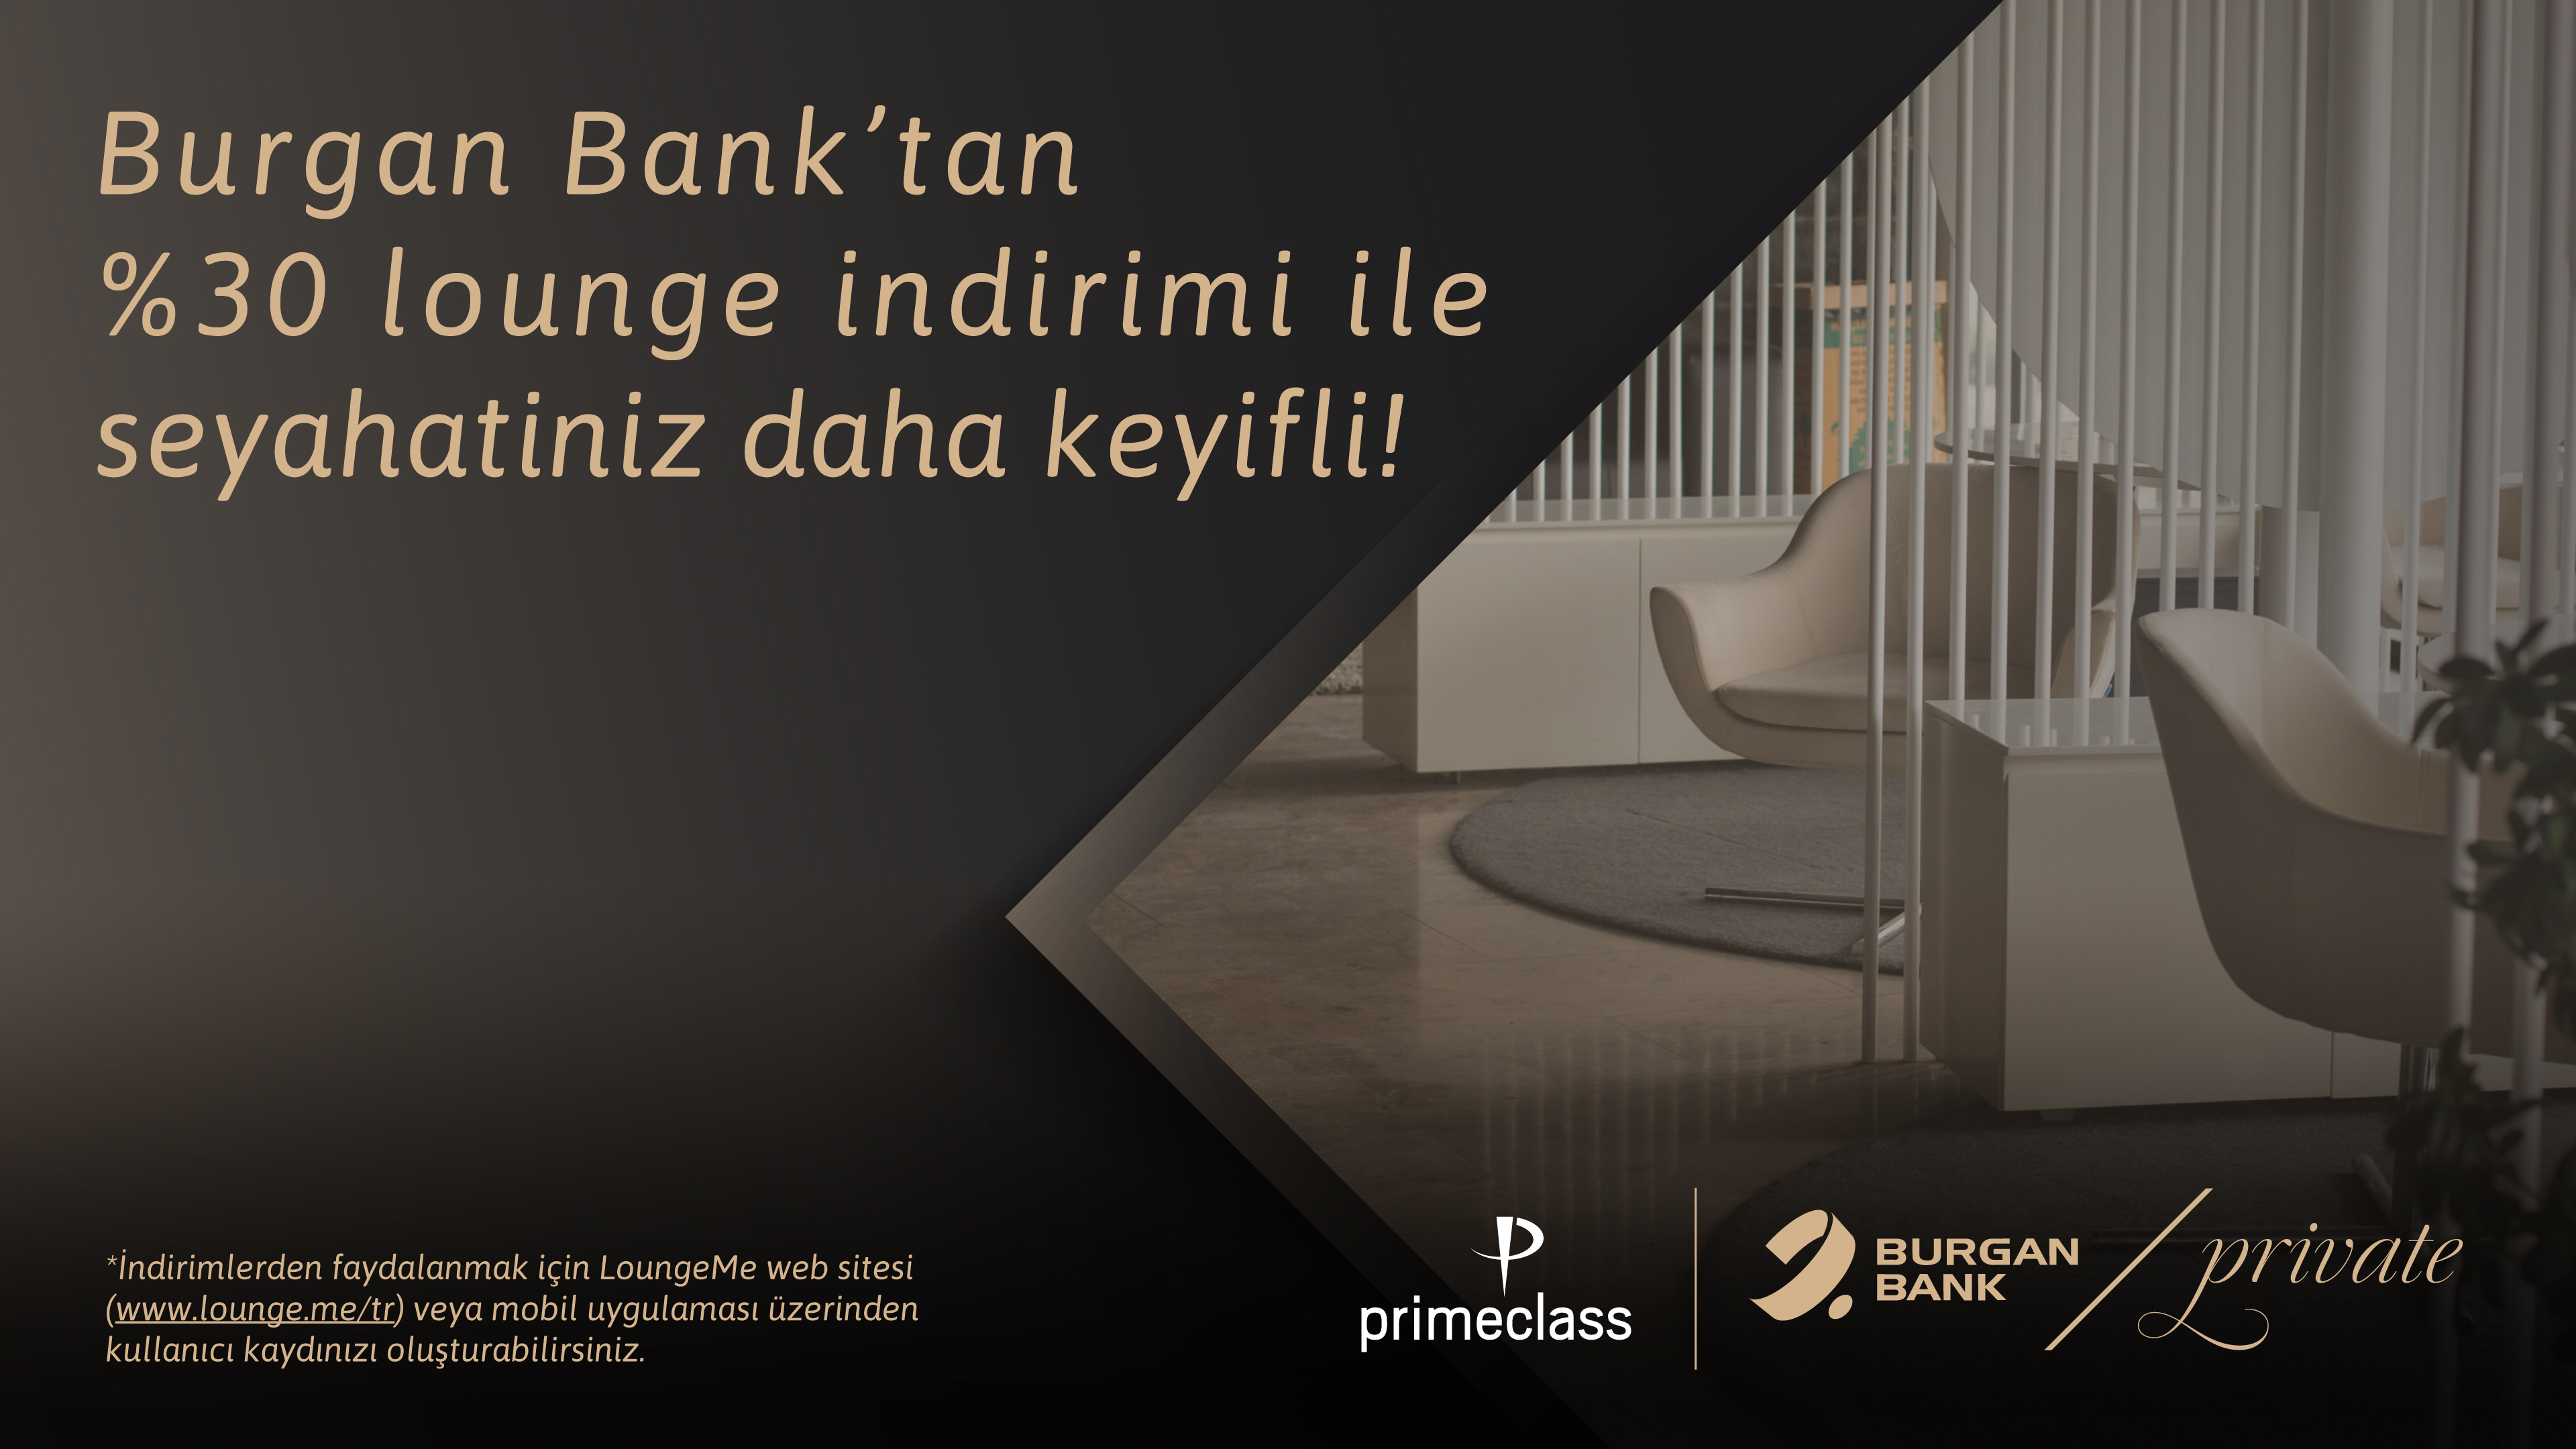 Burgan Bank'tan %30 Lounge İndirimi Kampanyası